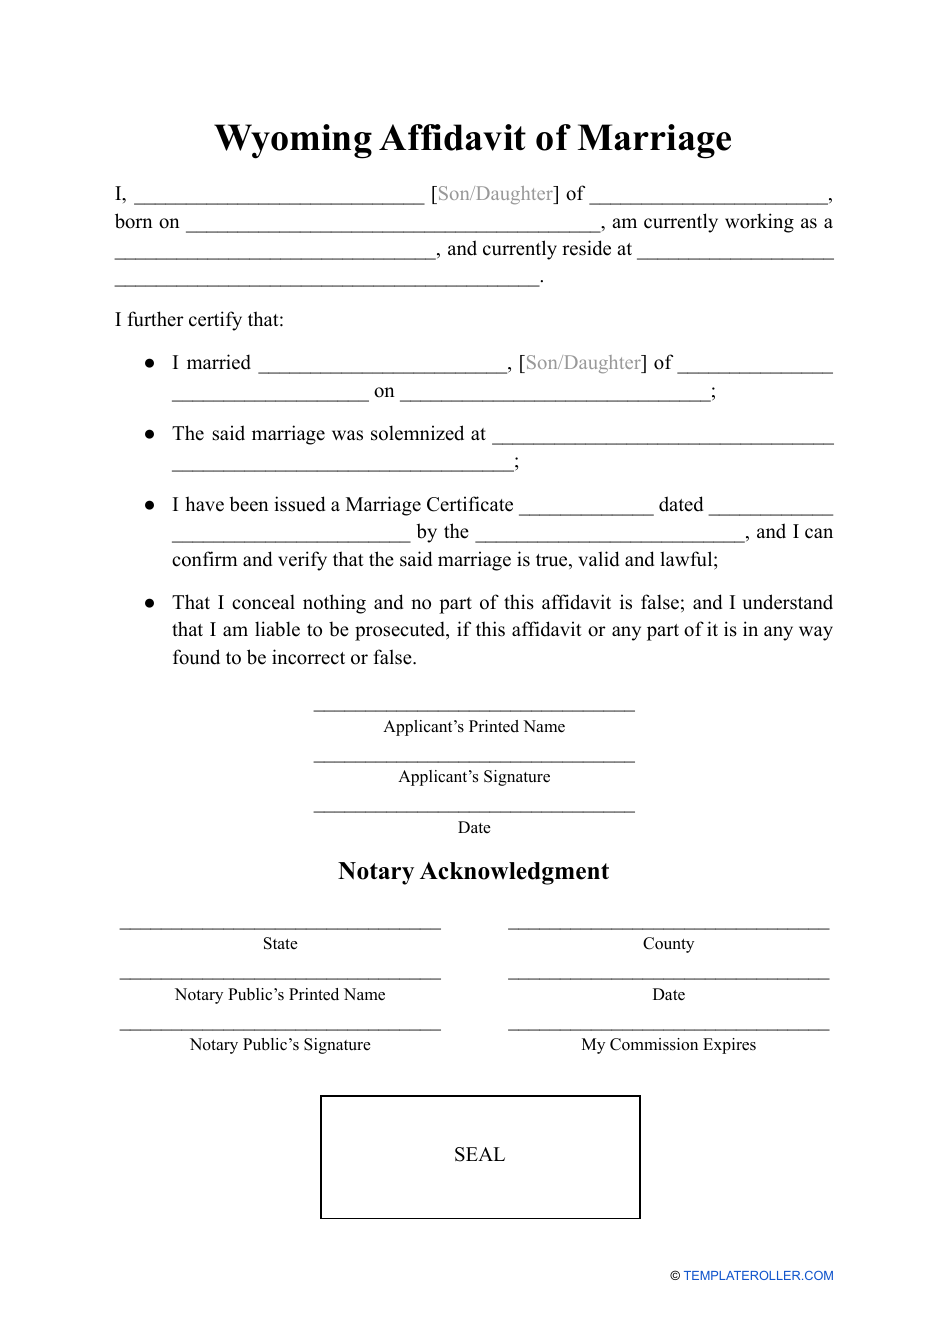 Affidavit of Marriage - Wyoming, Page 1